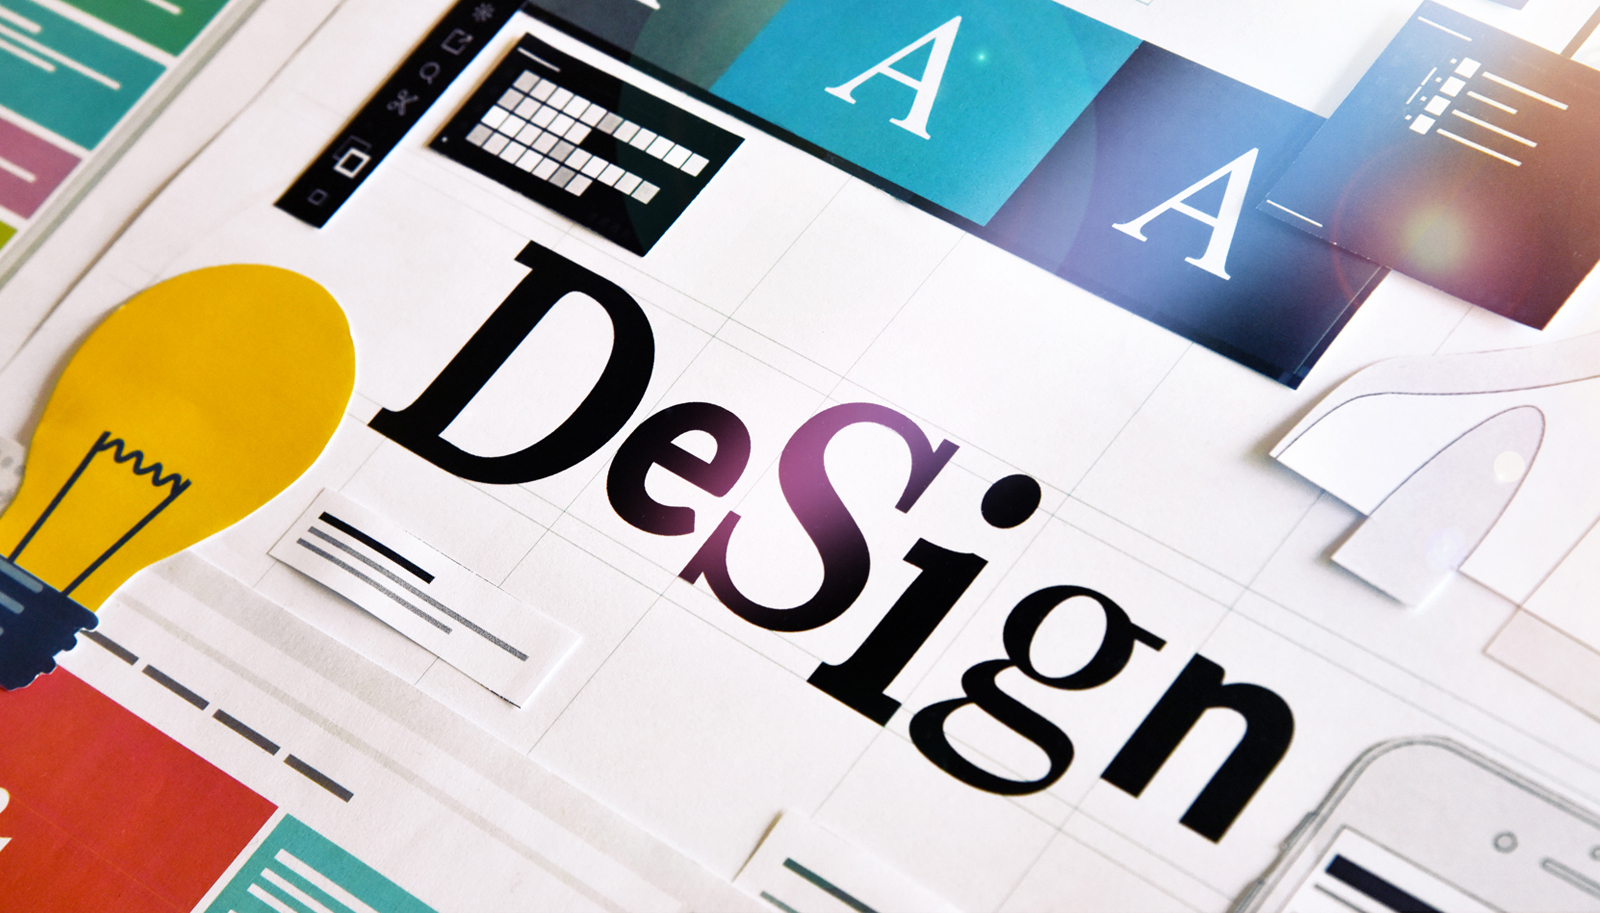 starke.design - Ihre Werbeagentur für Web- und Grafikdesign